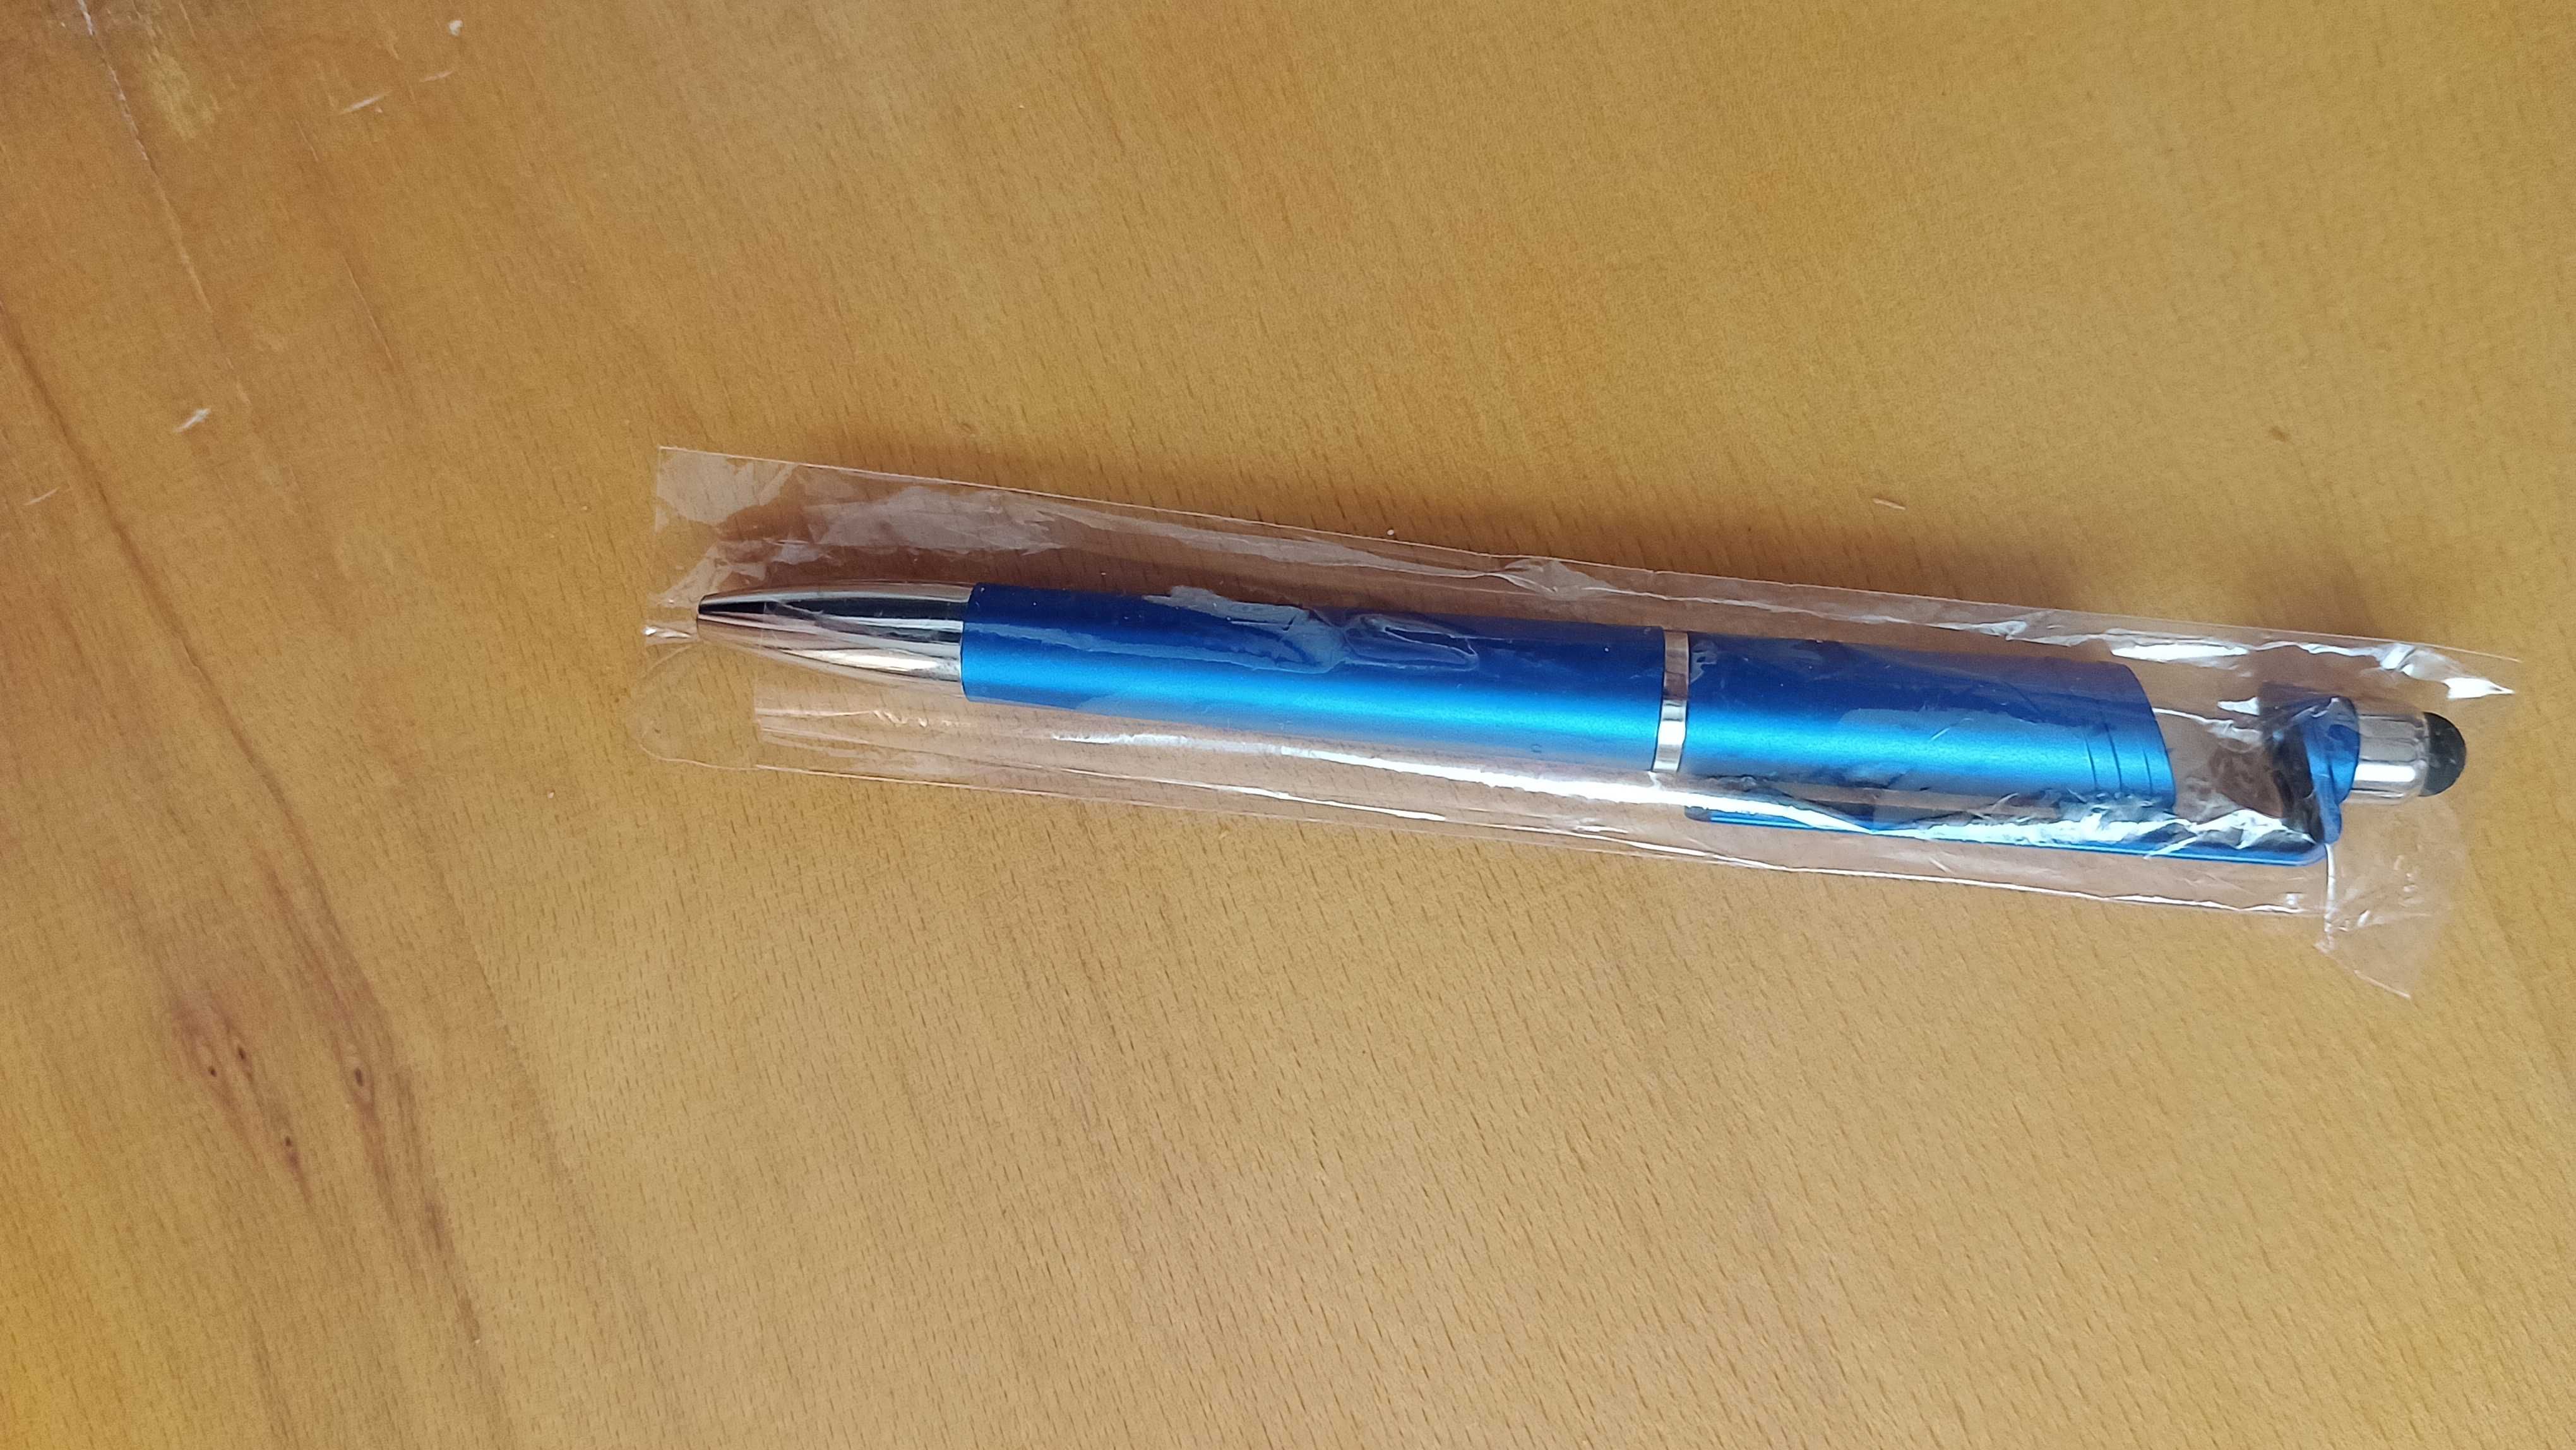 Pix stylus pen 2 in 1 pentru tableta si telefon, nou